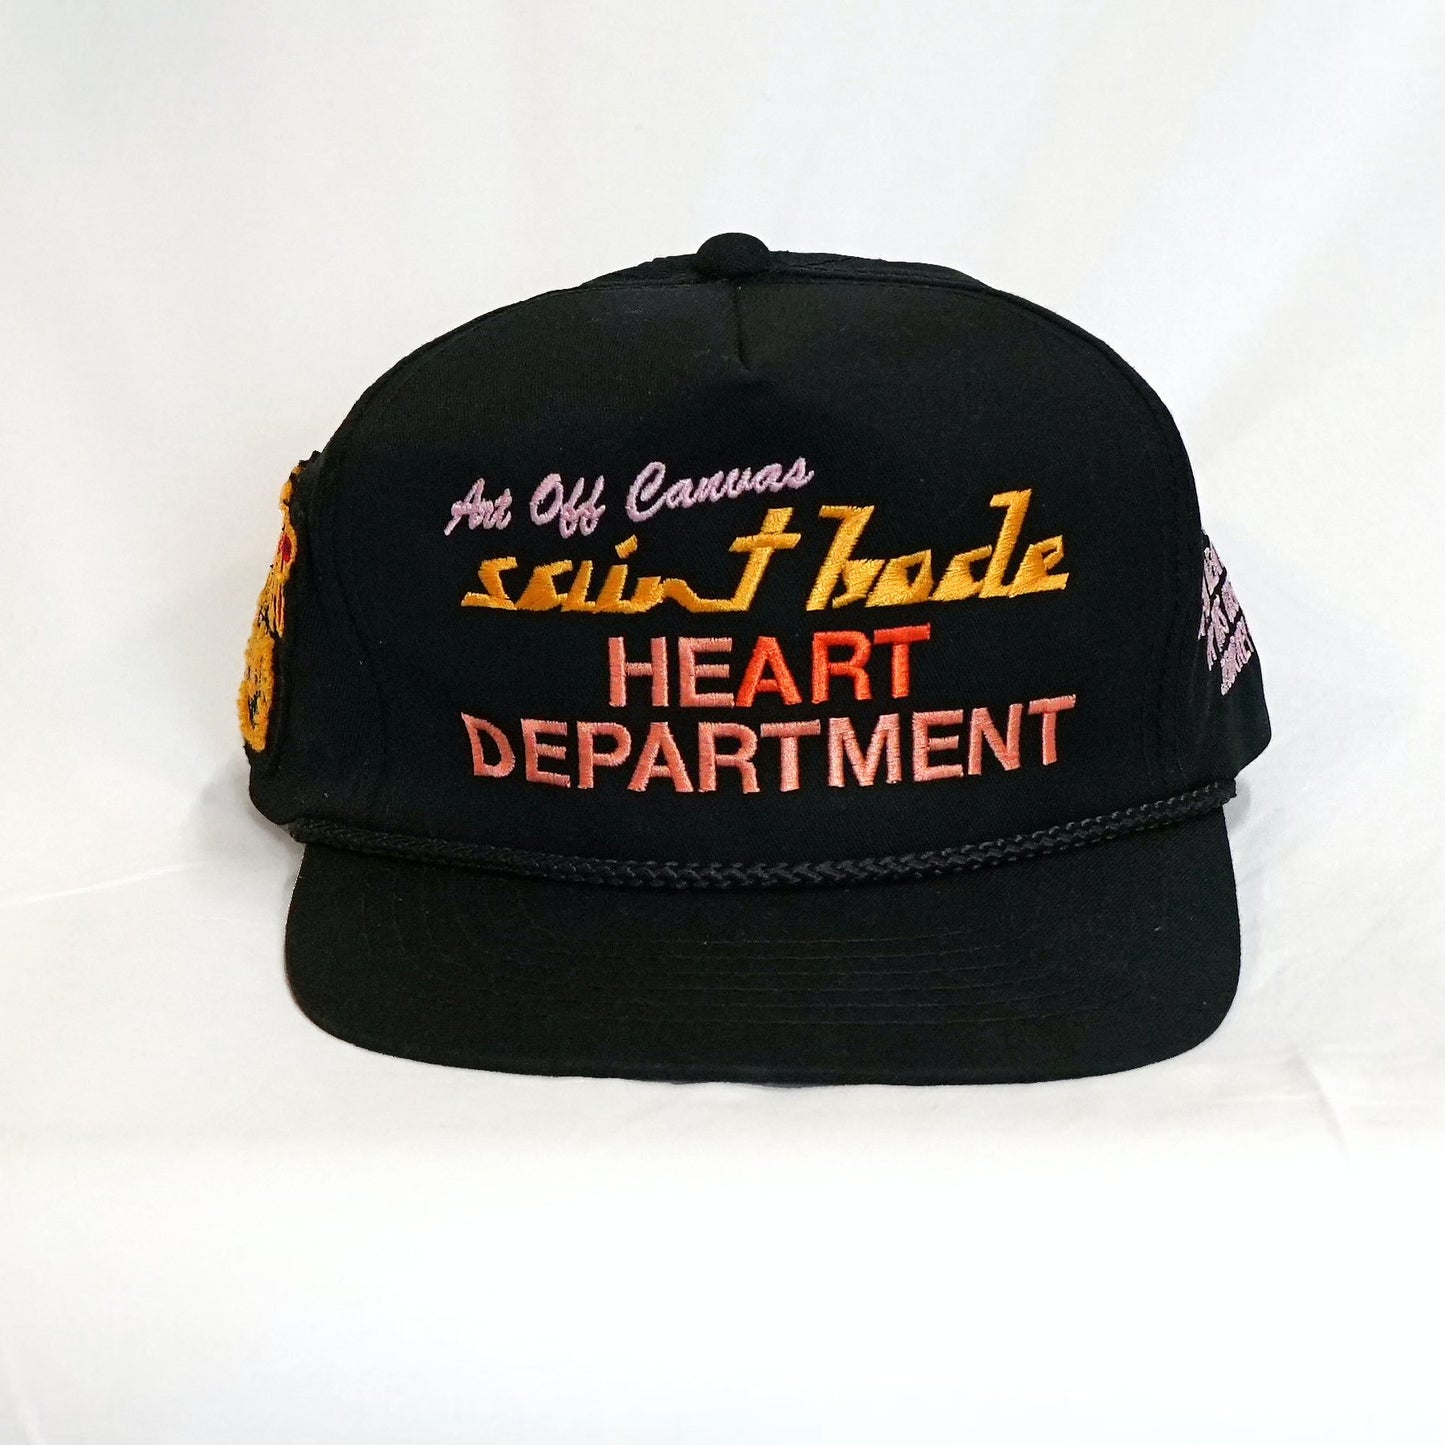 HEART DEPARTMENT HAT